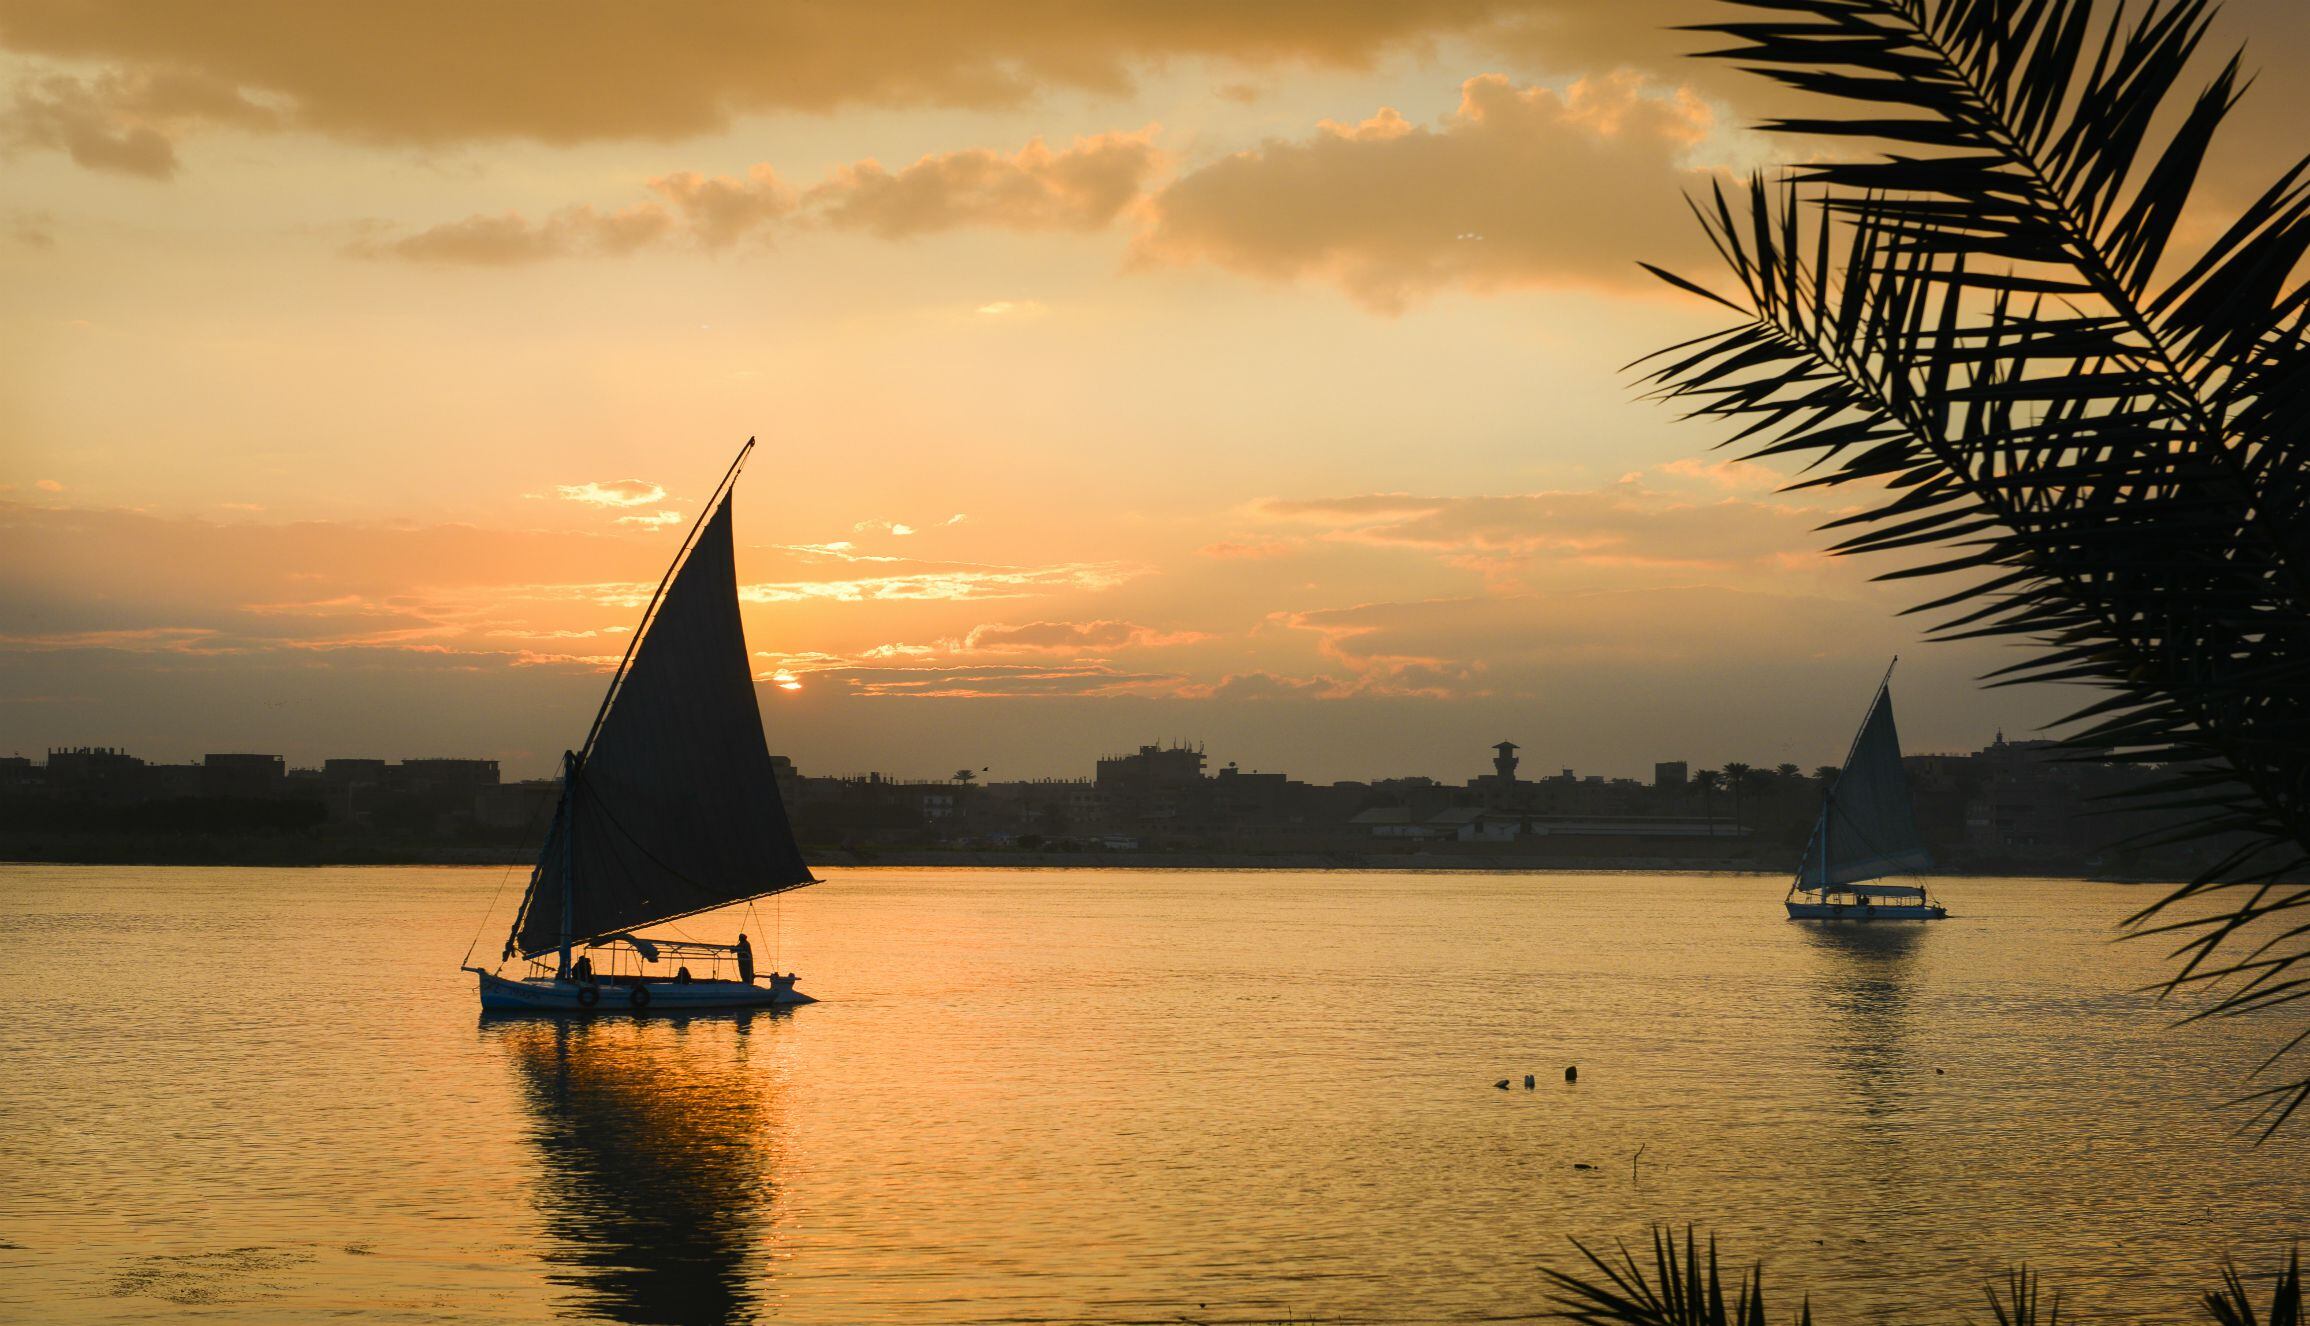 El Cairo es la puerta de entrada de un viaje épico que lo lleva a surcar el río Nilo. (Foto: Shutterstock)

